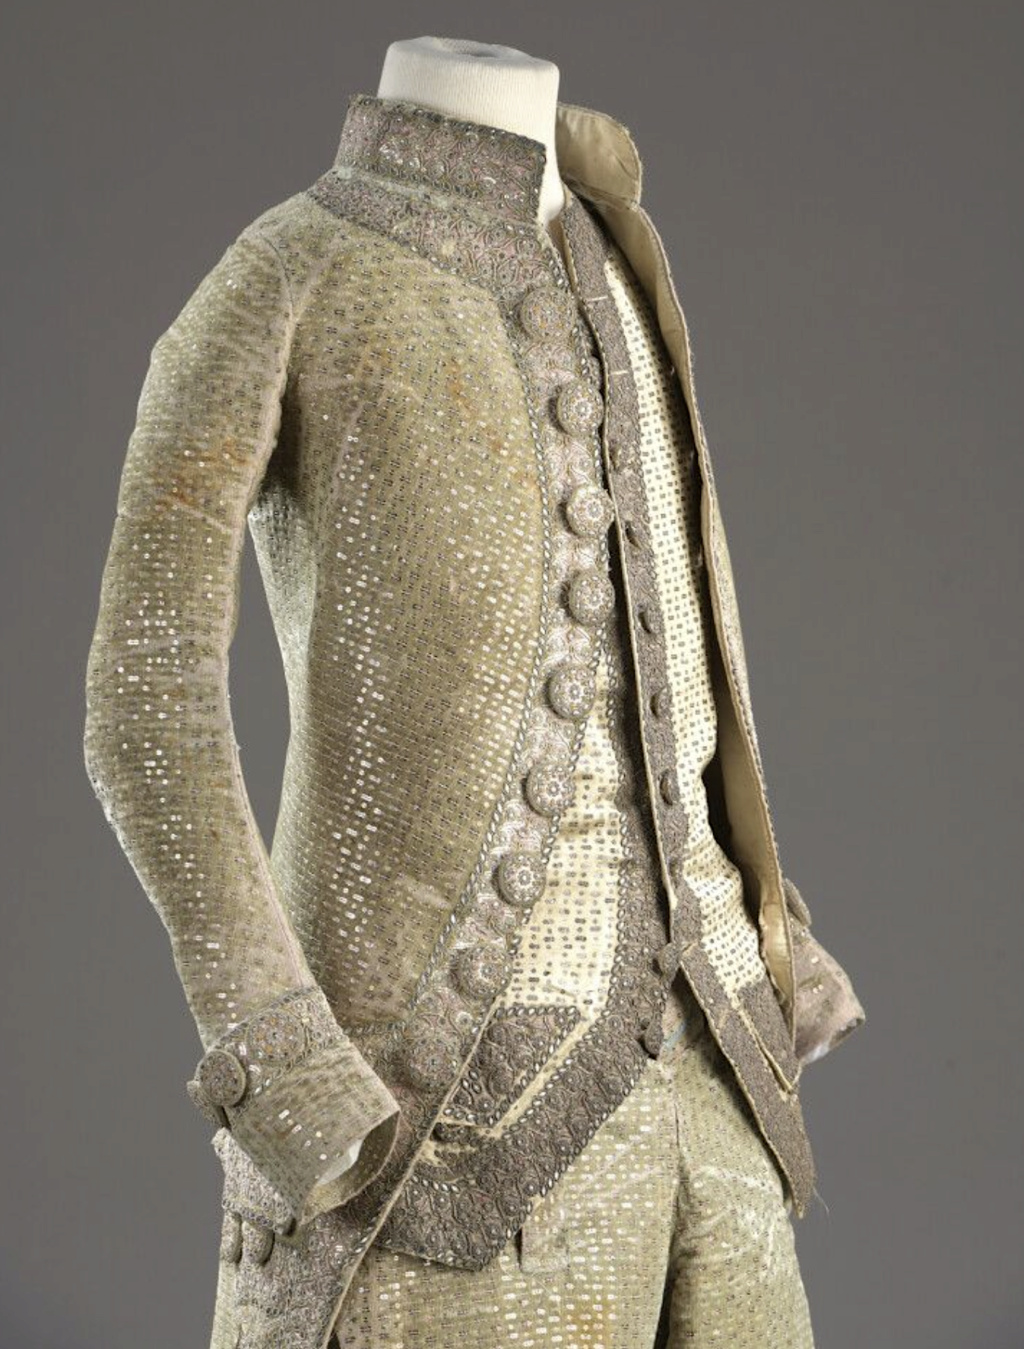 La mode et les habits masculins au XVIIIe siècle - Page 4 Capt3266